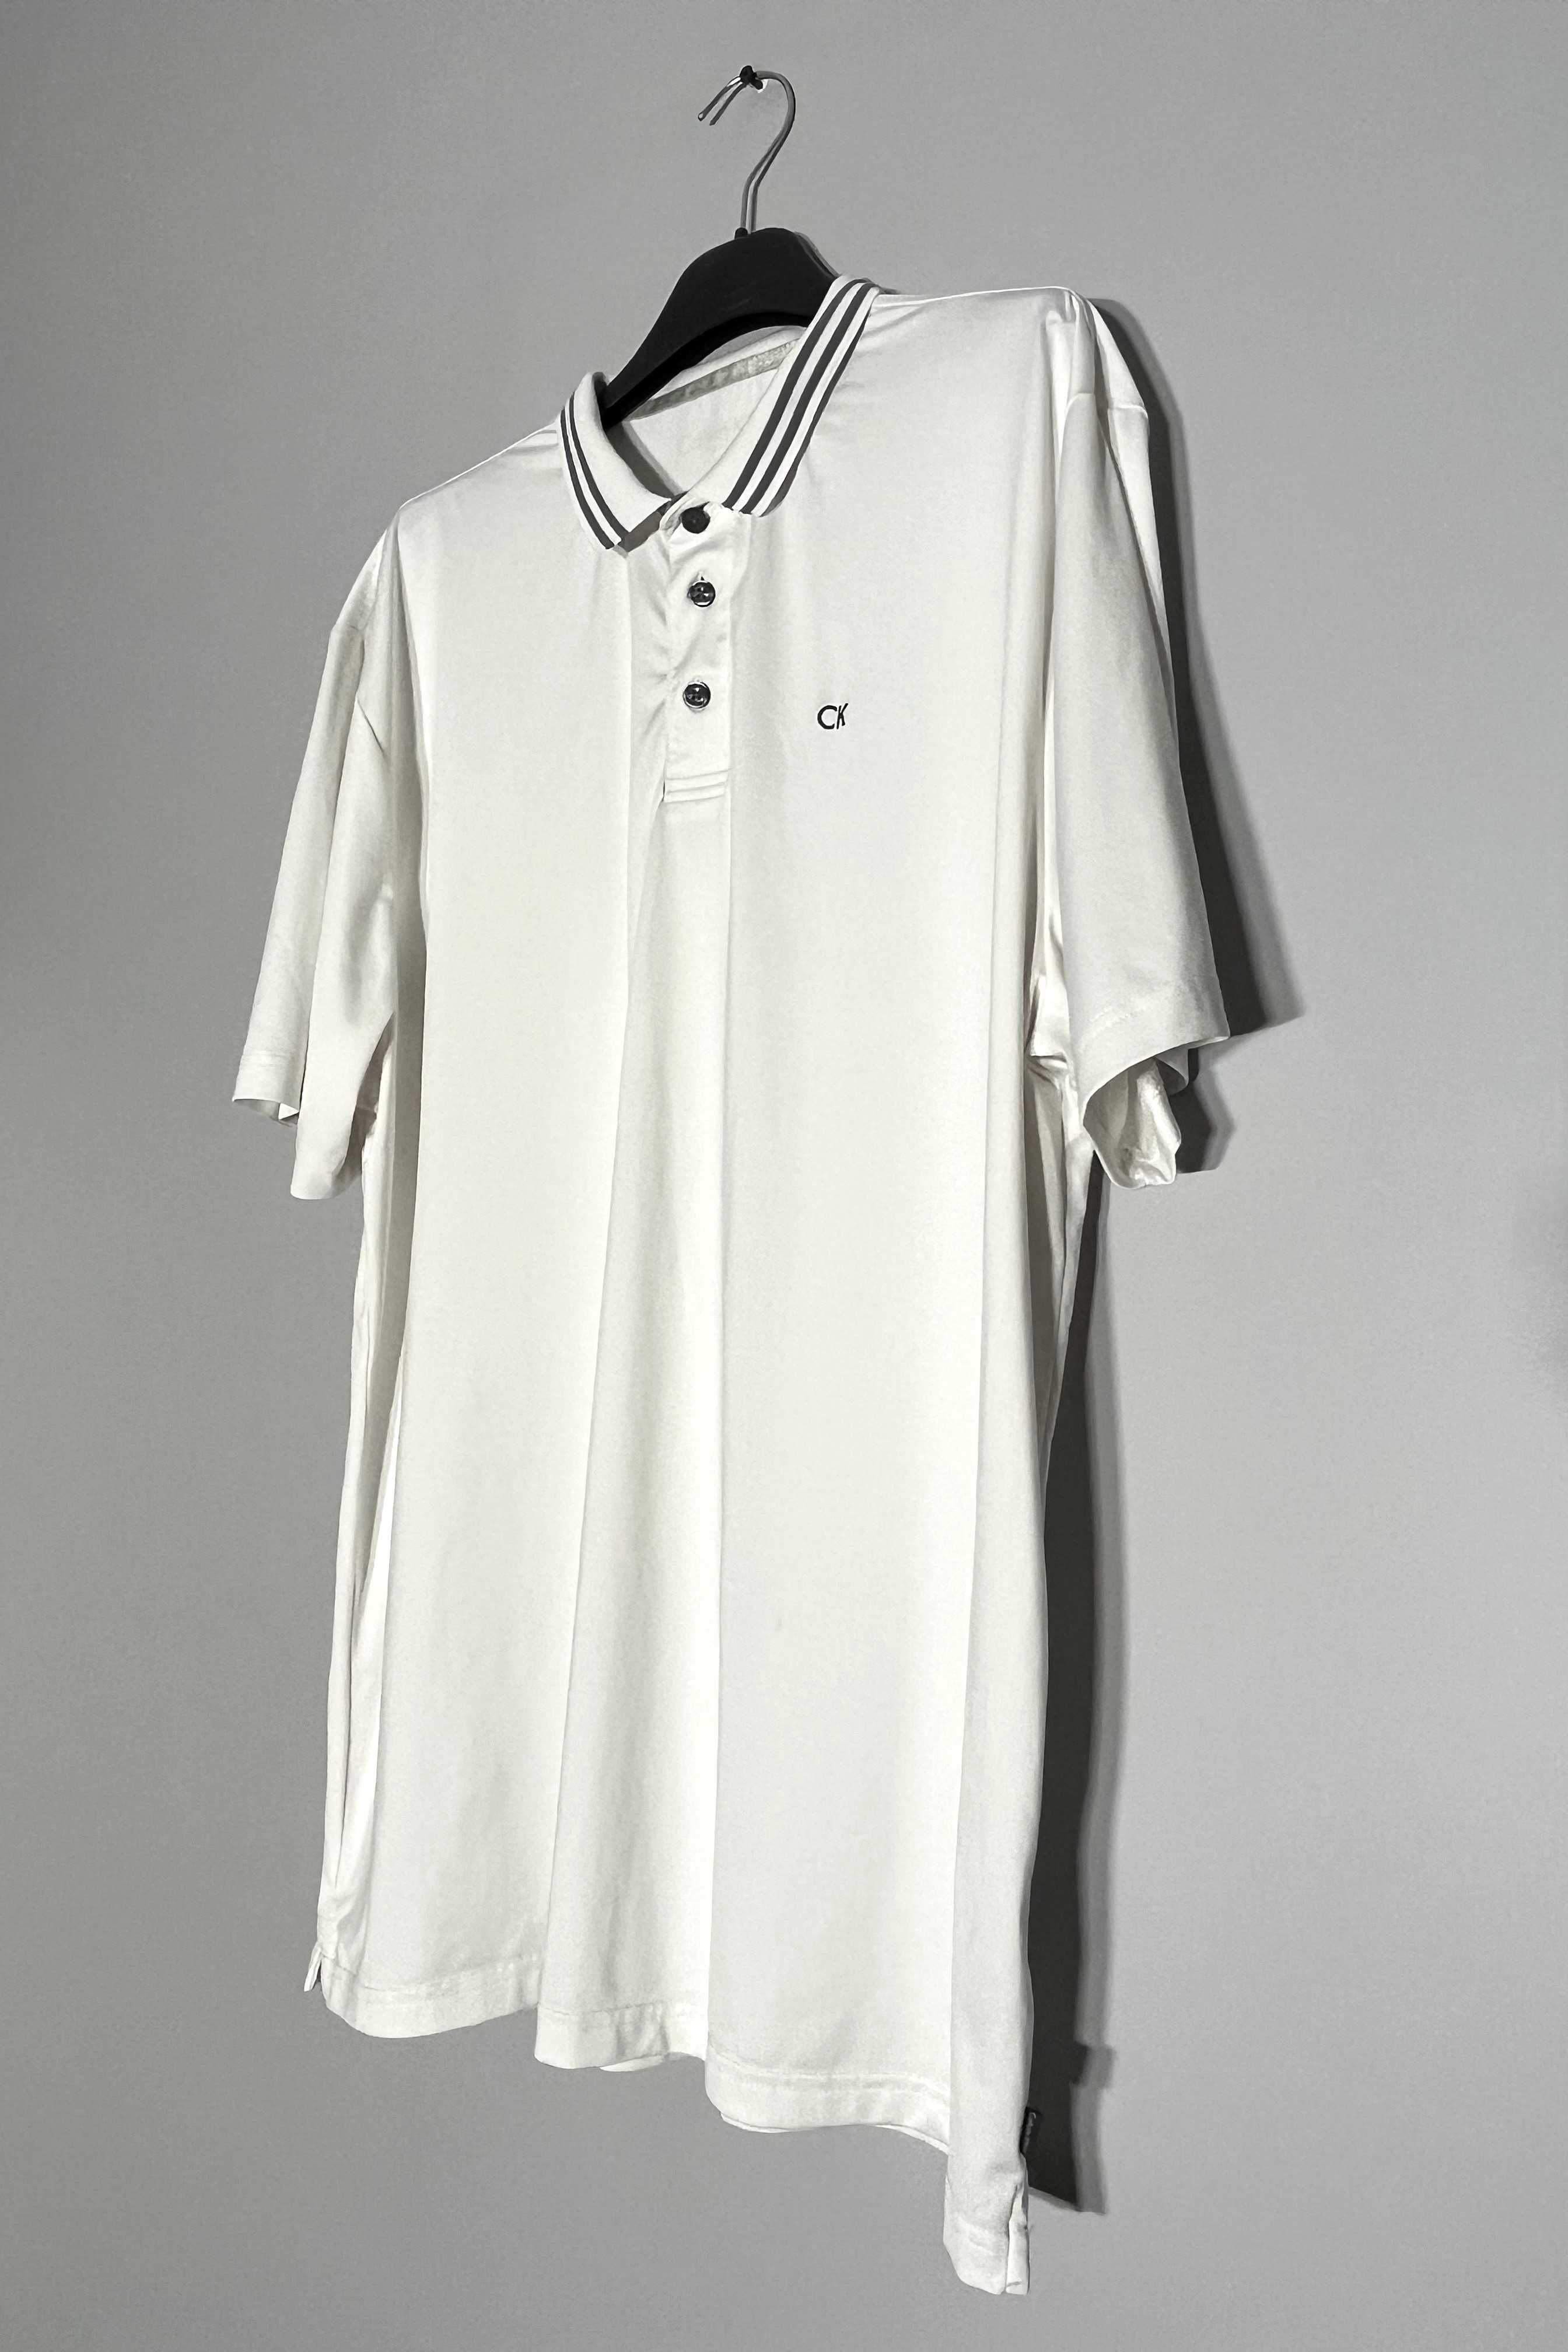 Koszulka sportowa polo Calvin Klein XL